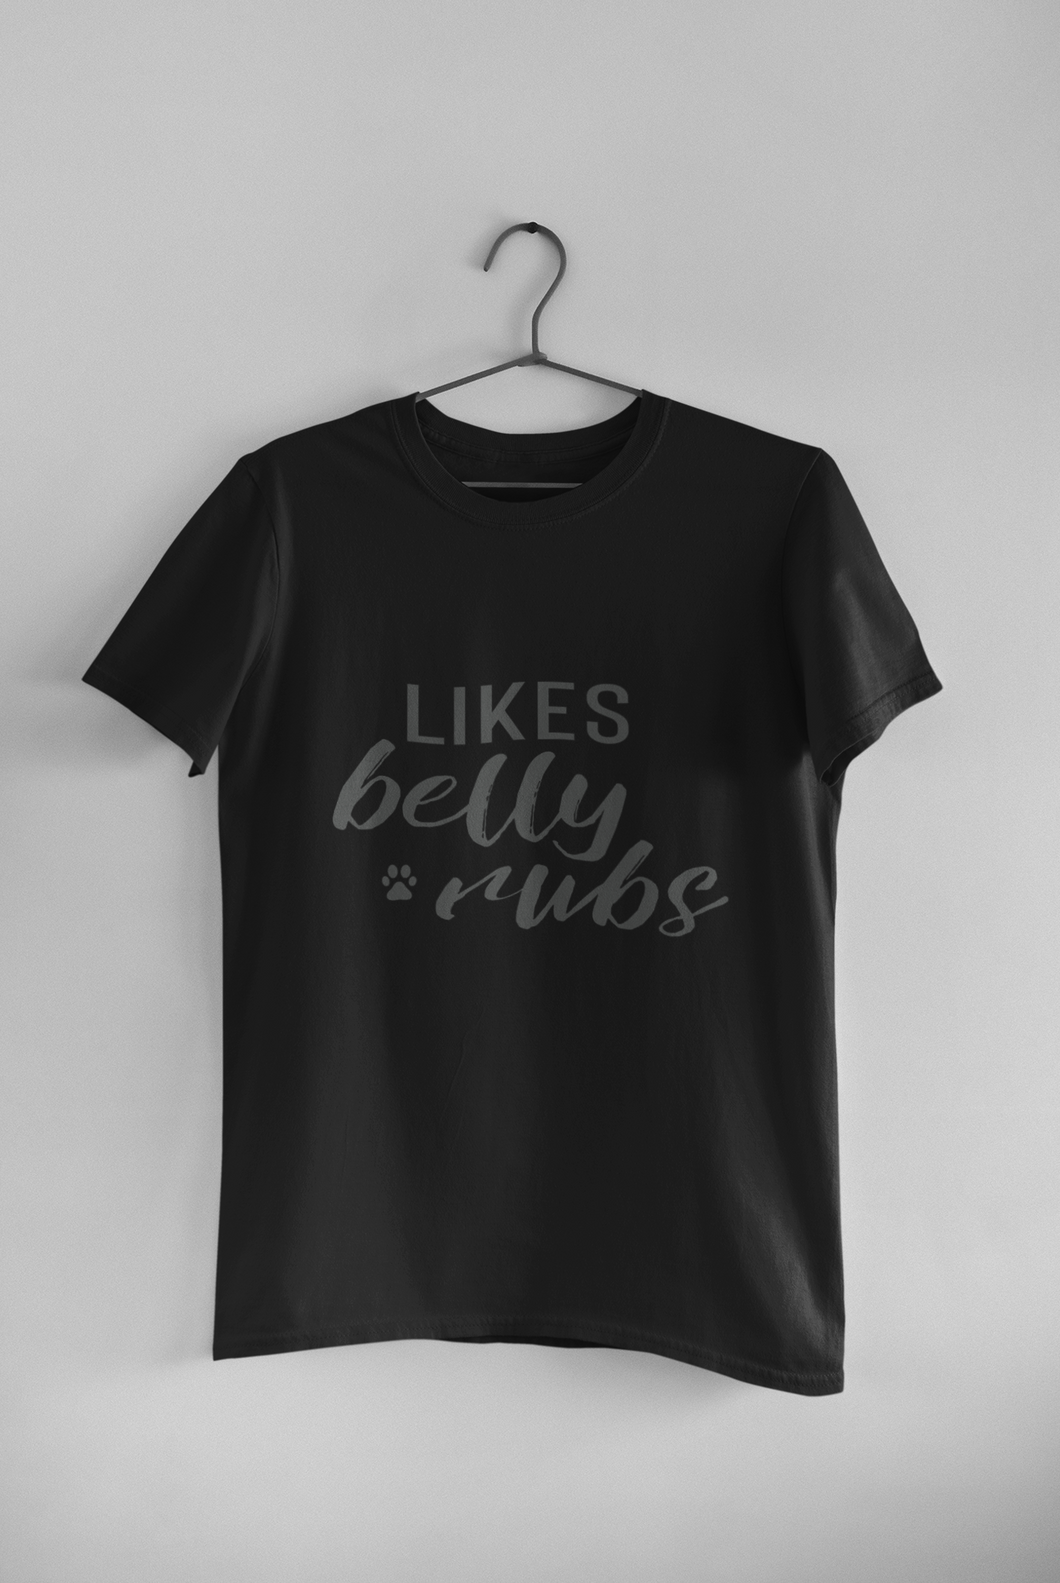 Likes Belly Rubs Men's/Unisex or Women's T-shirt